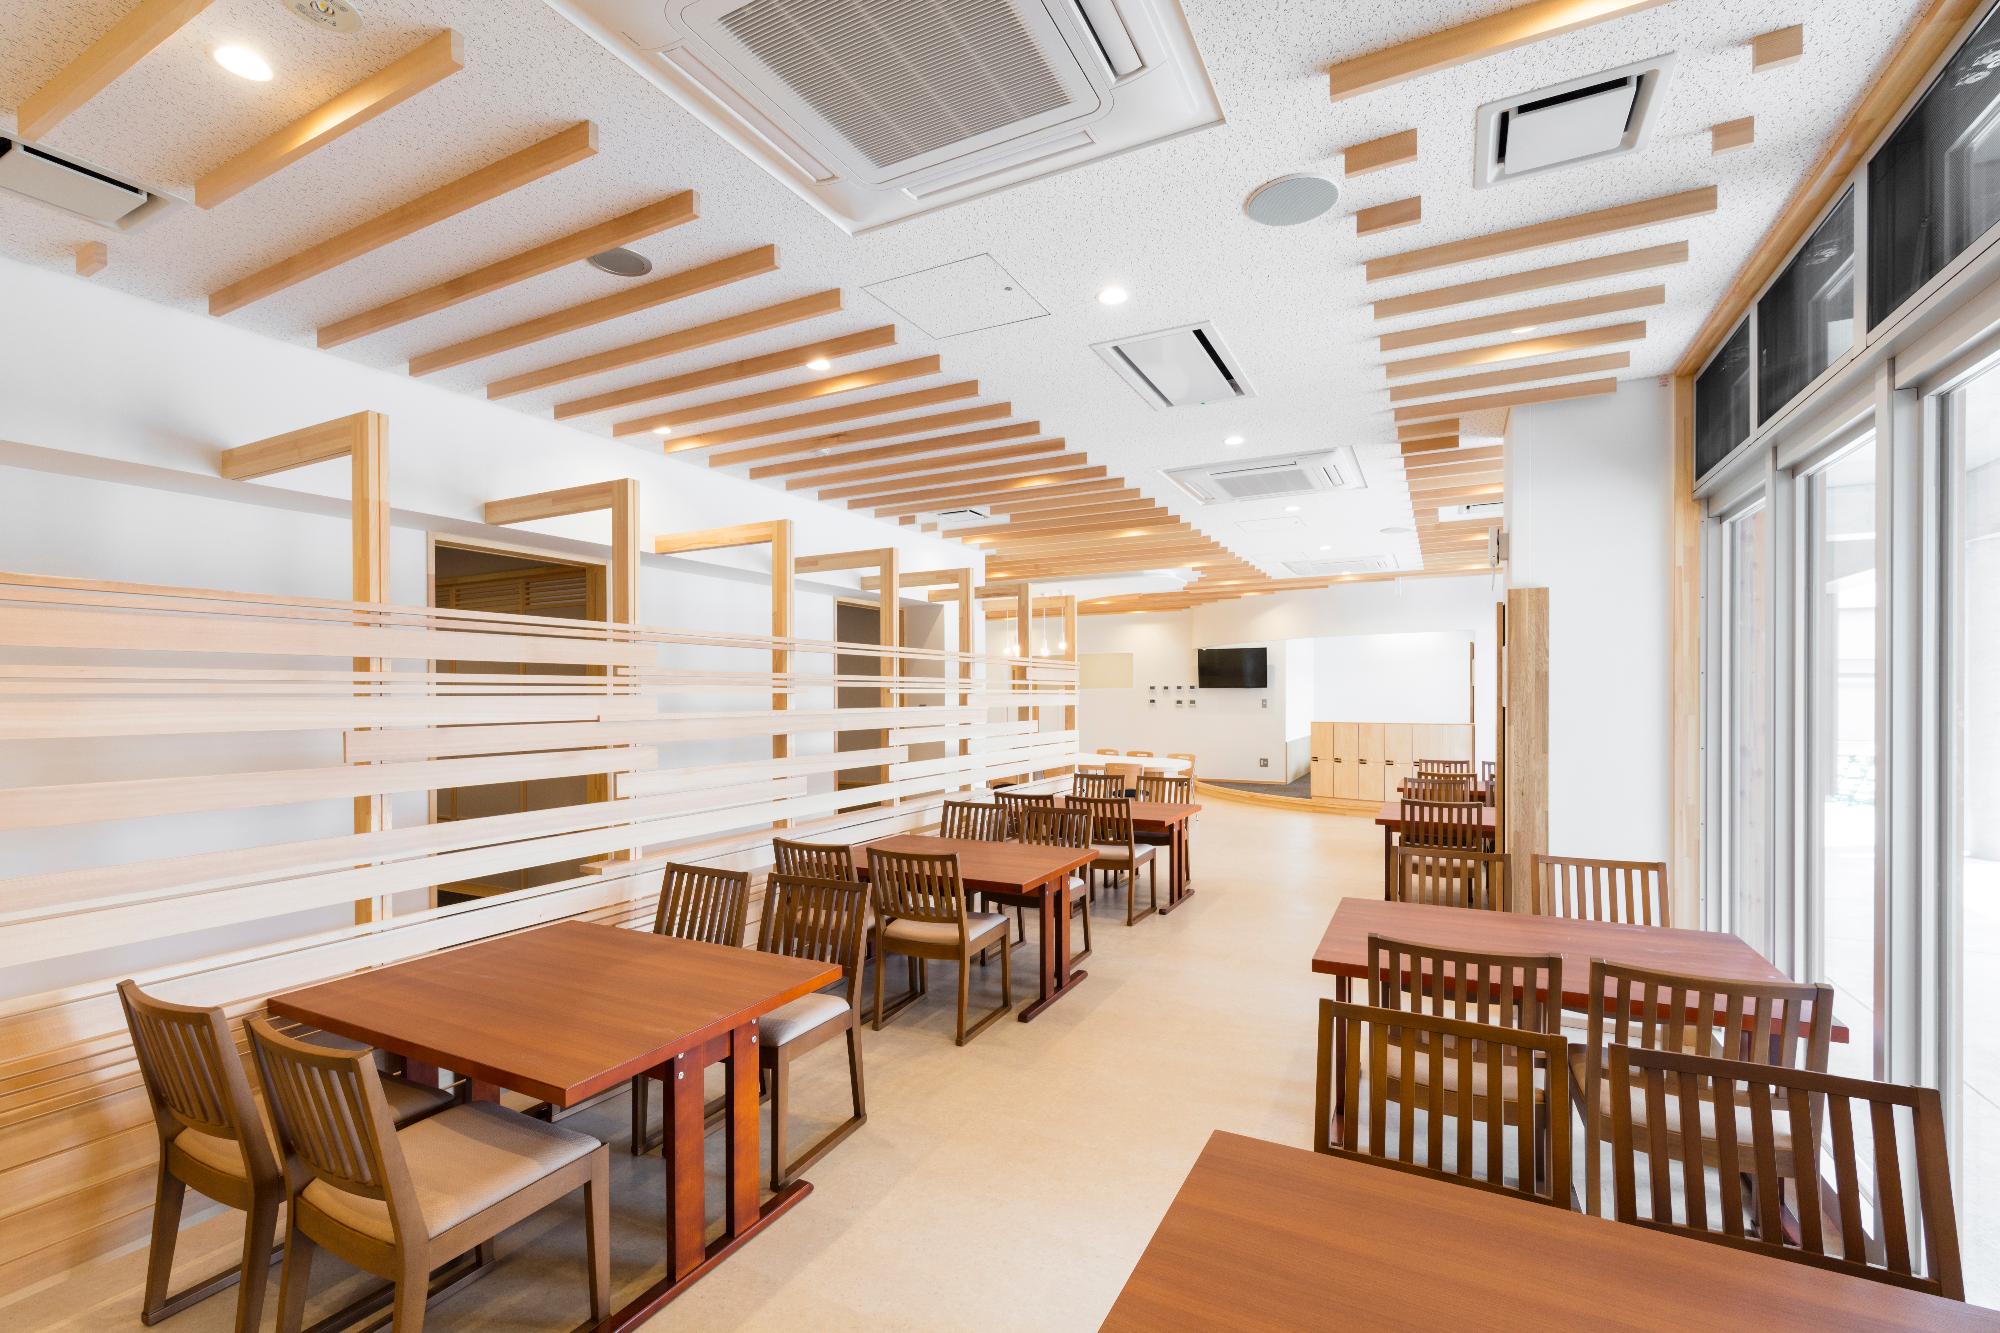 明るい空間に木製の椅子とテーブルが複数台並んでいる屋内のレストラン「くるりんく」の写真